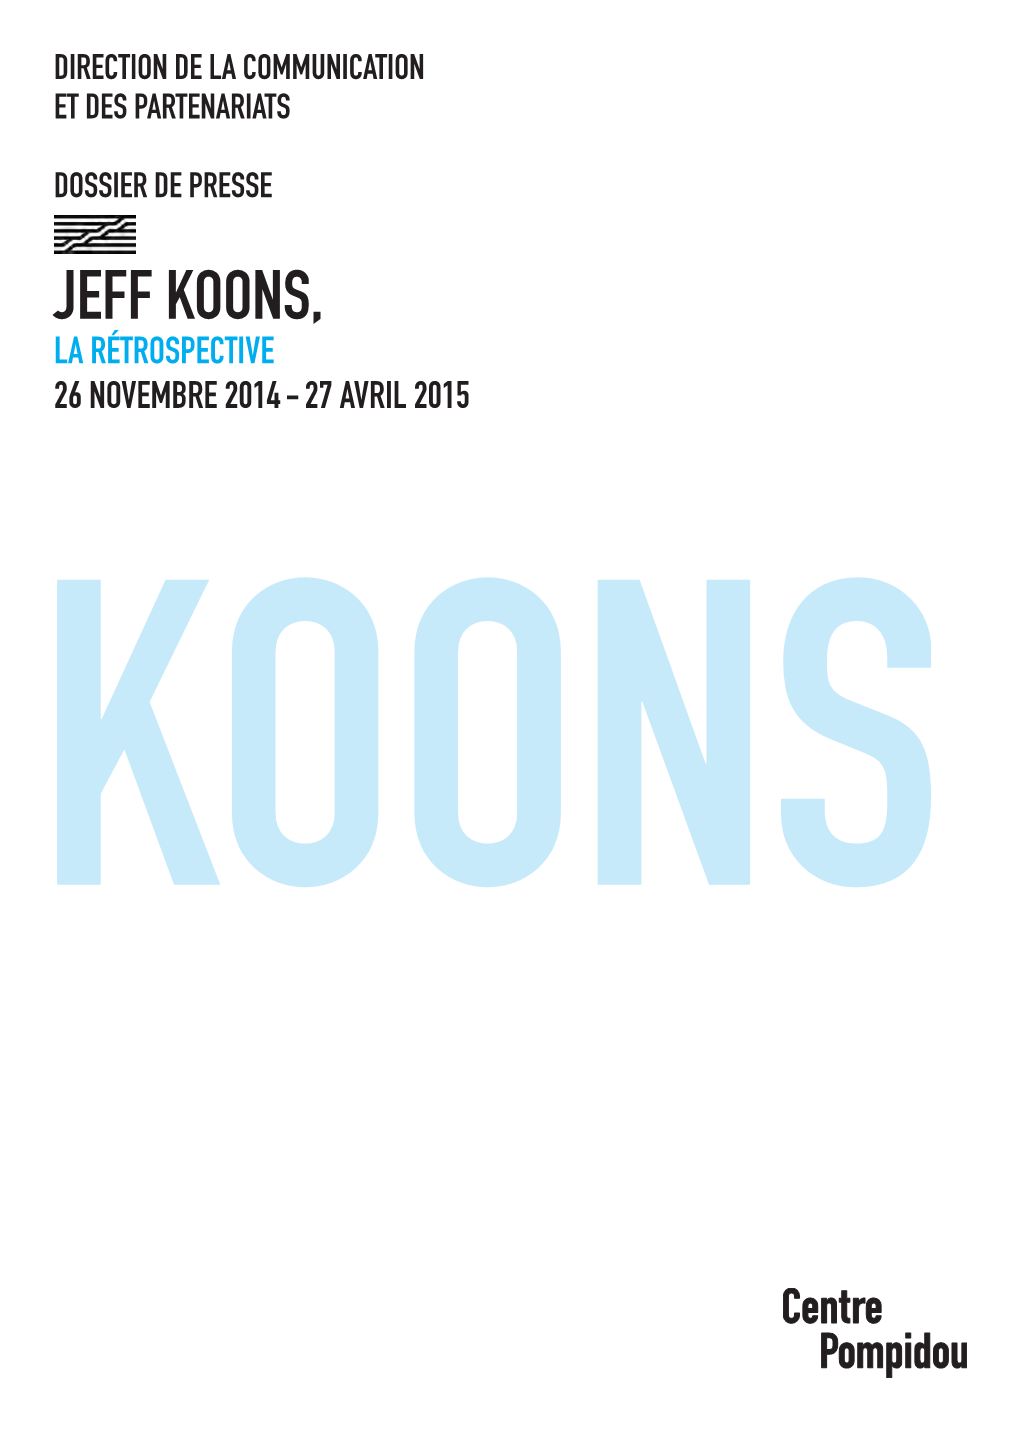 Jeff Koons, La Rétrospective 26 Novembre 2014 - 27 Avril 2015